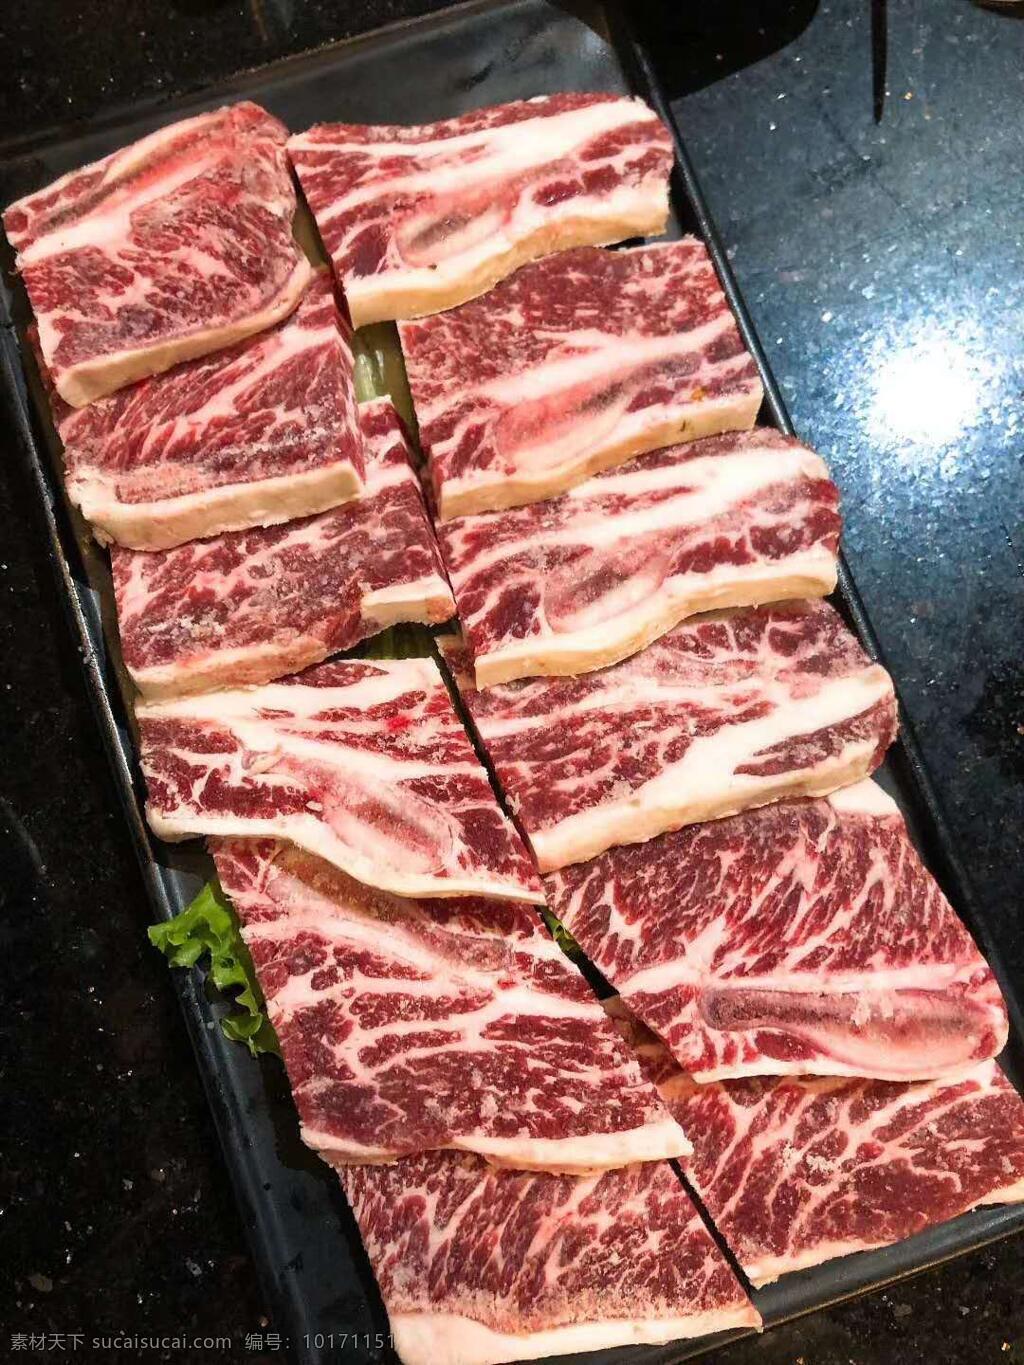 雪花牛肉 烤牛肉实拍 牛肉照片图片 牛肉照片 大块牛肉 烧烤肉 餐饮美食 食物原料